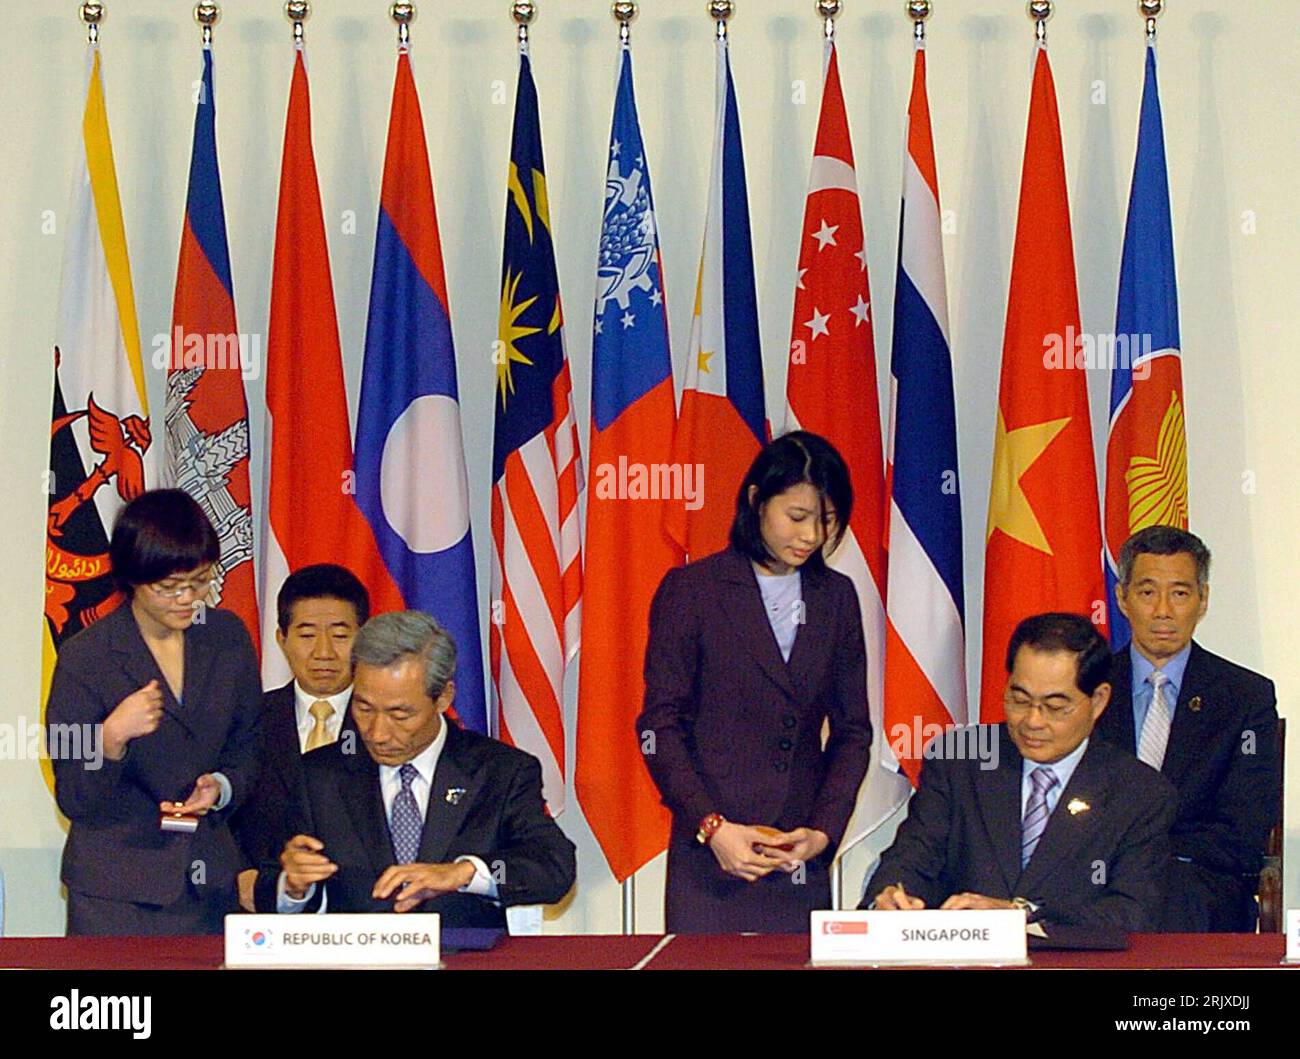 Bildnummer: 52242449  Datum: 21.11.2007  Copyright: imago/Xinhua V.l.n.r.: Roh Moo-hyun (KOR/Präsident), Kim Jong-hoon (KOR/Handelsminister), Lim Hng Kiang (SIN/Handelsminister) und Lee Hsien Loong (SIN/Premierminister) während des ASEAN-Treffens in Singapur - PUBLICATIONxNOTxINxCHN, Personen; 2007, Singapur, Treffen, Politik, Politiker, Konferenzen, Sitzung, Pressetermin, Vertragsunterzeichnung,; , quer, Kbdig, Gruppenbild, Internationale Politik, Politik, Singapur, Randbild, People Stock Photo